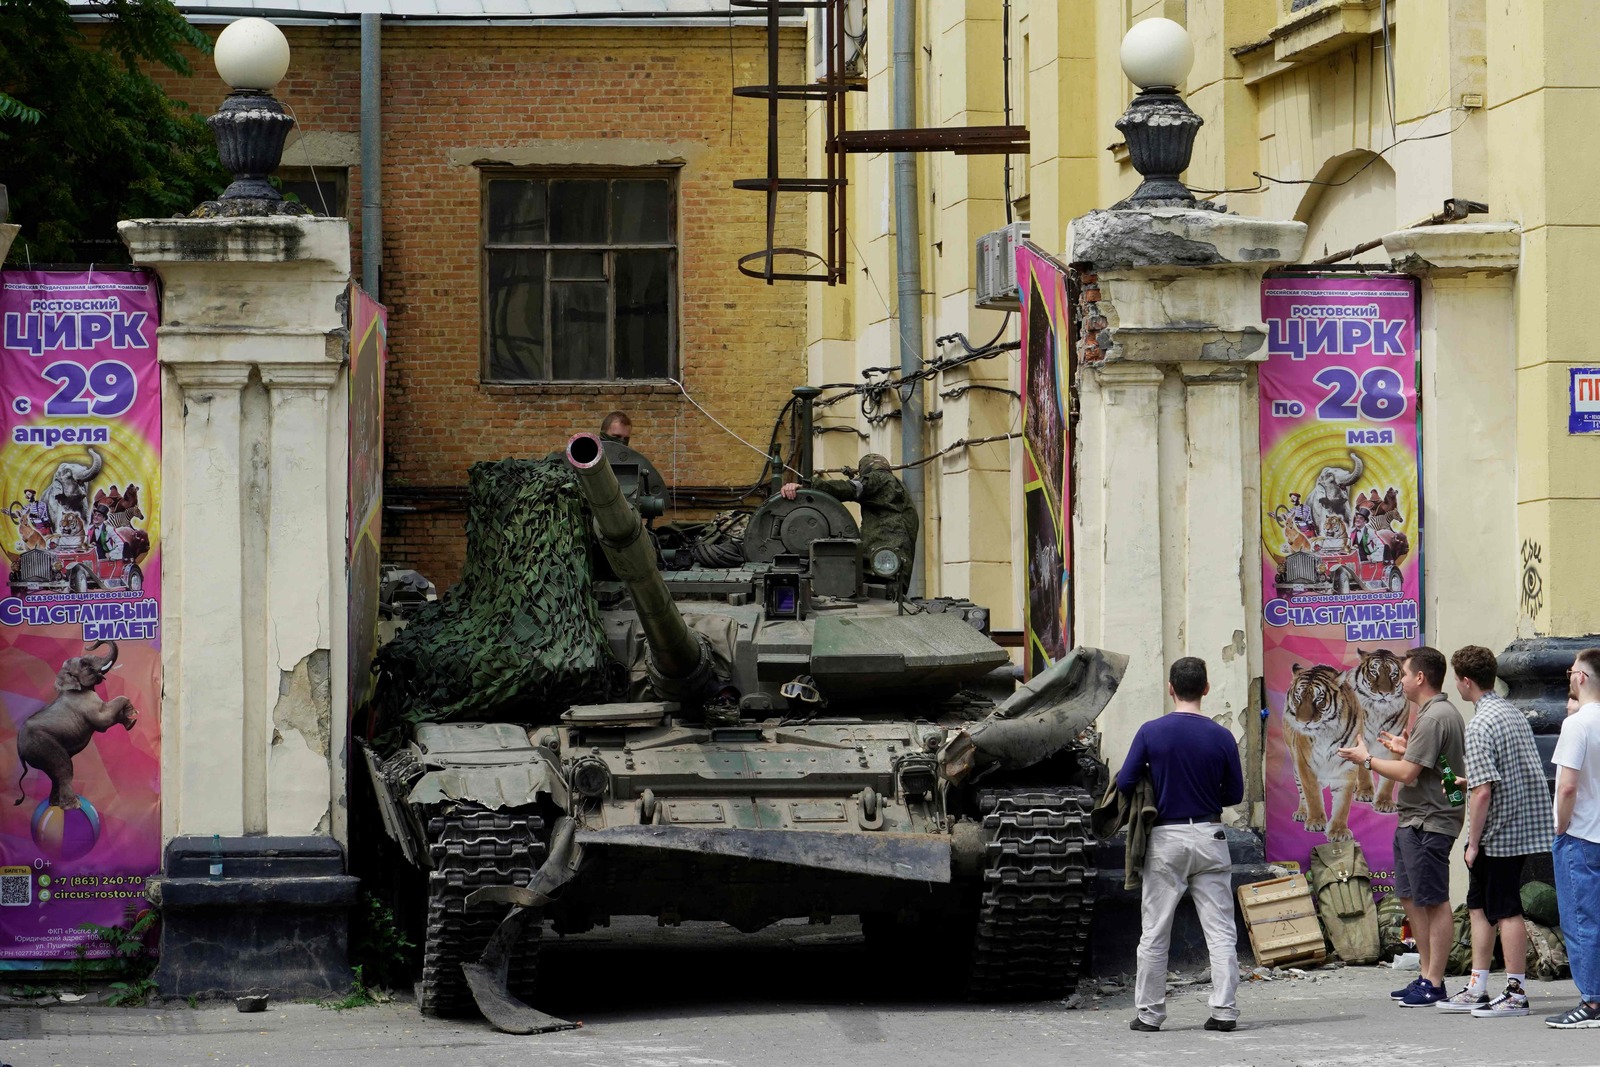 La gente mira un tanque cerca de un edificio circense en la ciudad de Rostov-on-Don. (STRINGER/AFP)